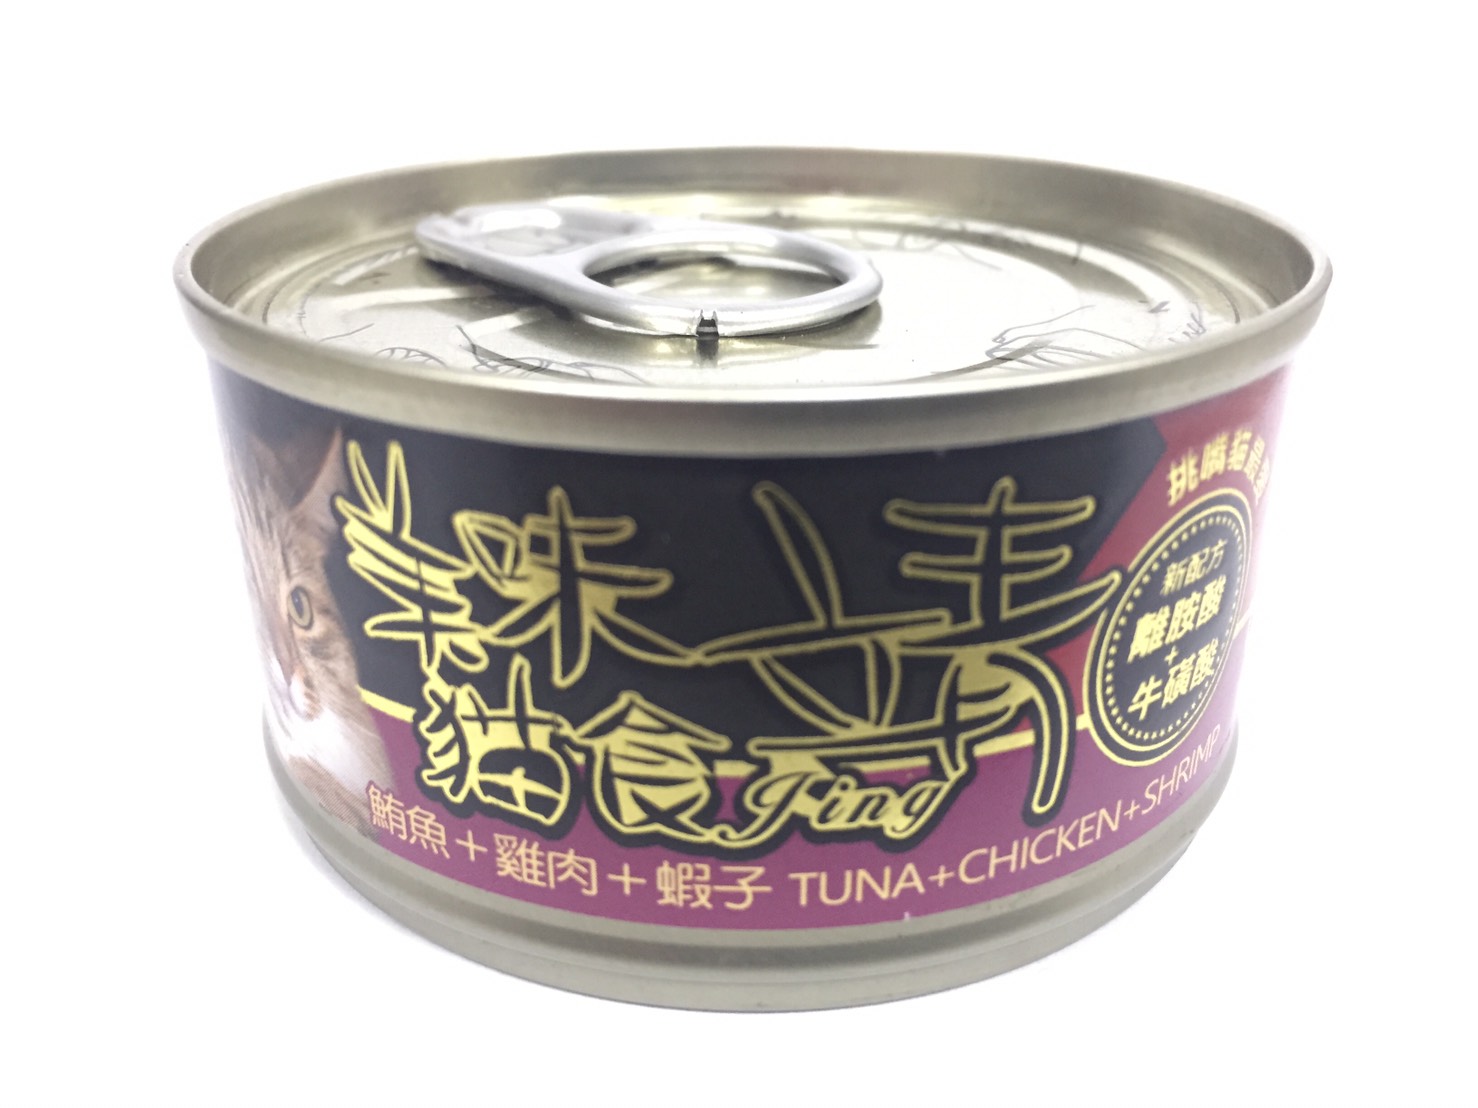 靖特級貓罐-鮪魚+雞肉+蝦子
Jing cat can-tuna+chicken+shrimp